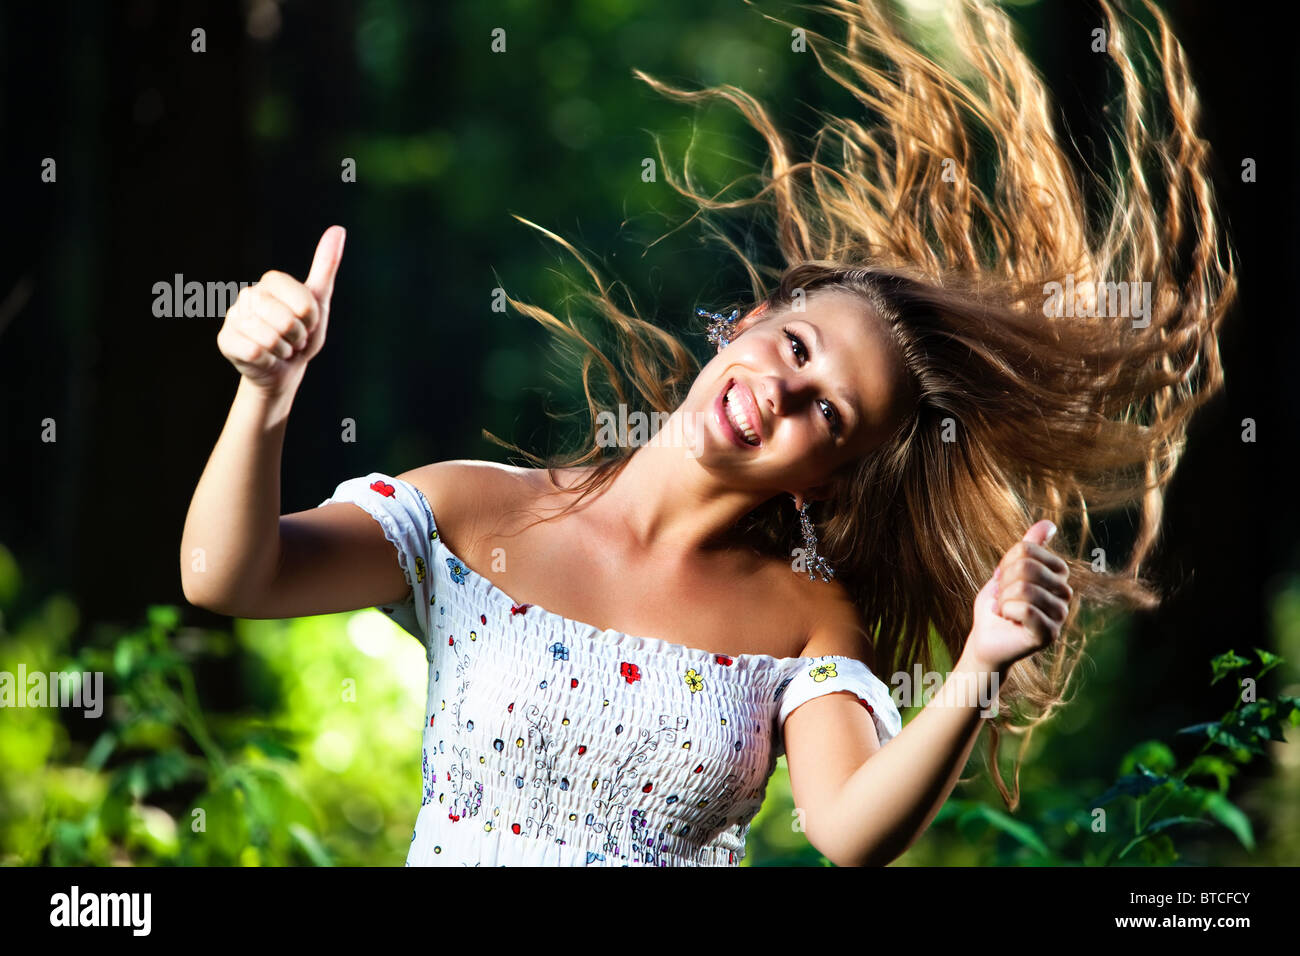 Junge, lächelnde Frau mit wehenden Haaren zeigt Erfolg Handsign. Stockfoto